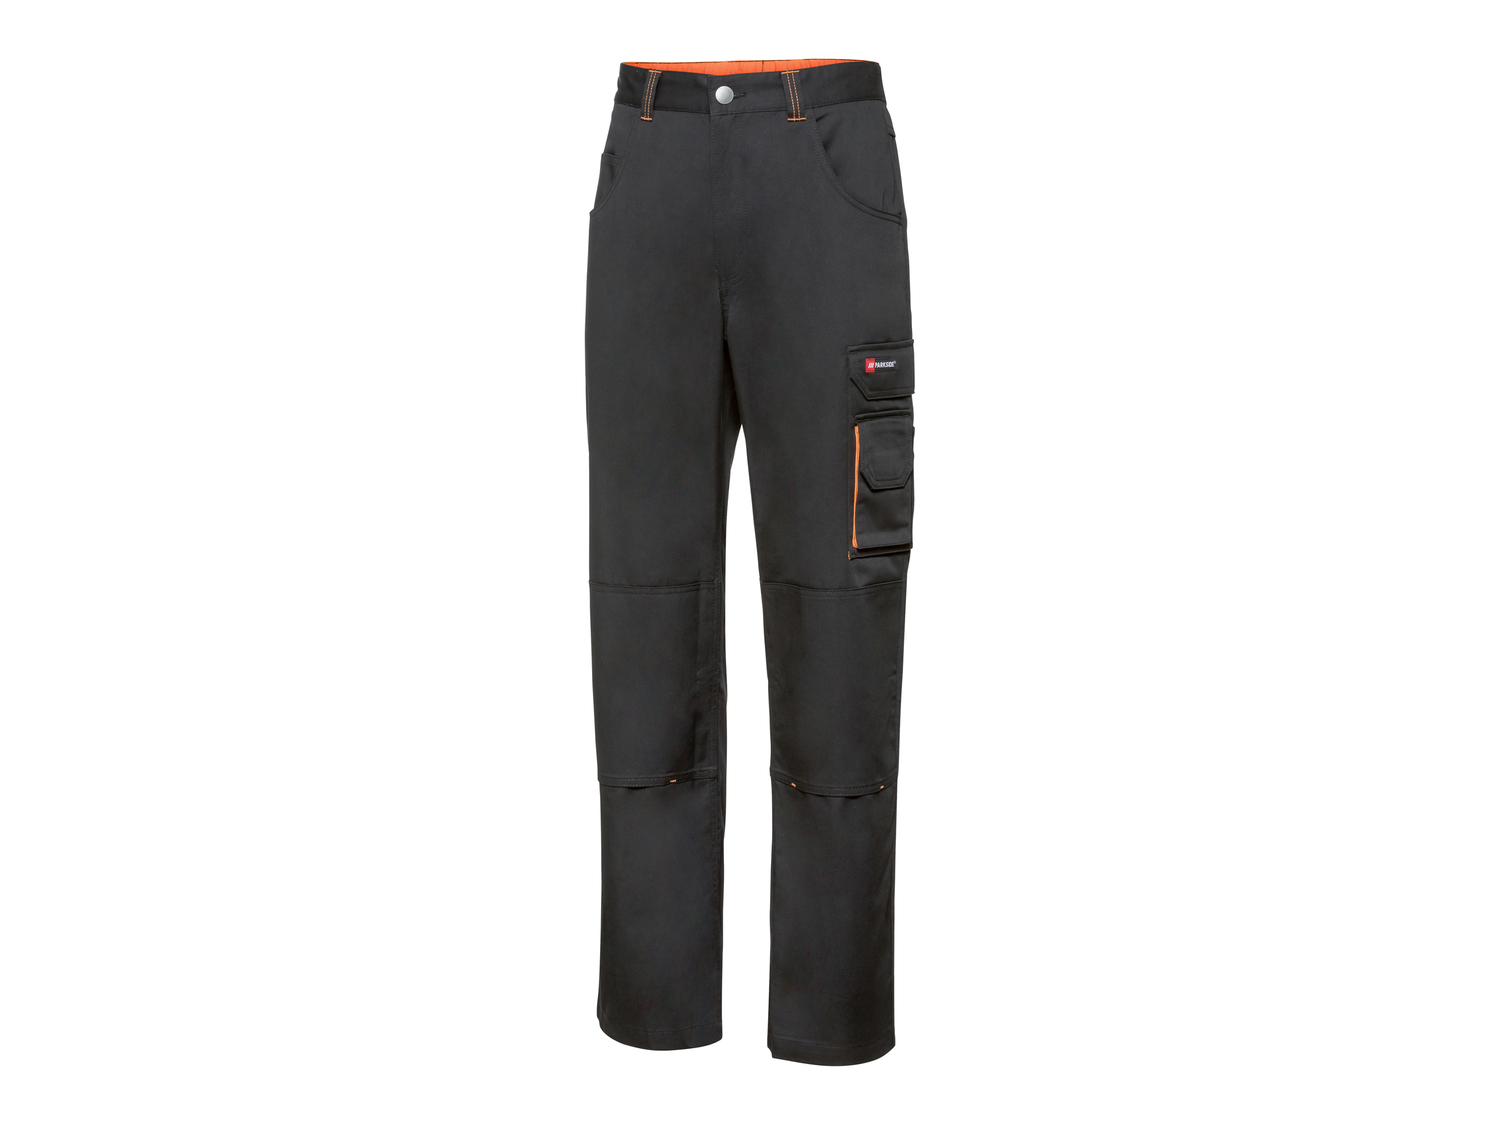 Pantaloni da lavoro per uomo Parkside, prezzo 14.99 &#8364; 
Misure: 48-56
Taglie ...